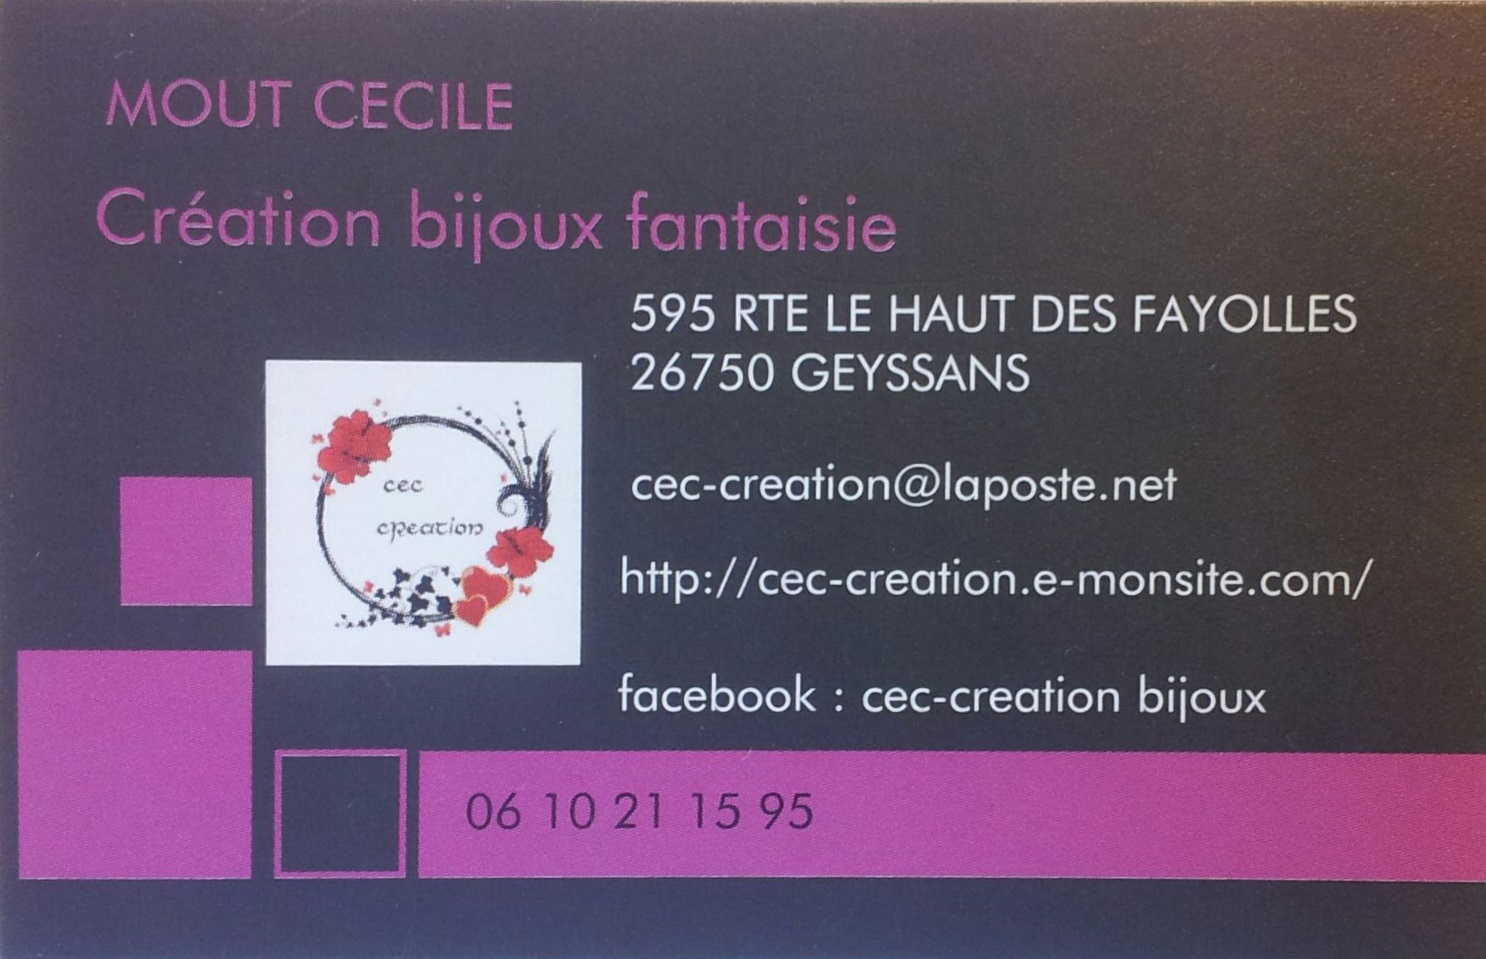 Cécile Mout / Création de bijoux fantaisie